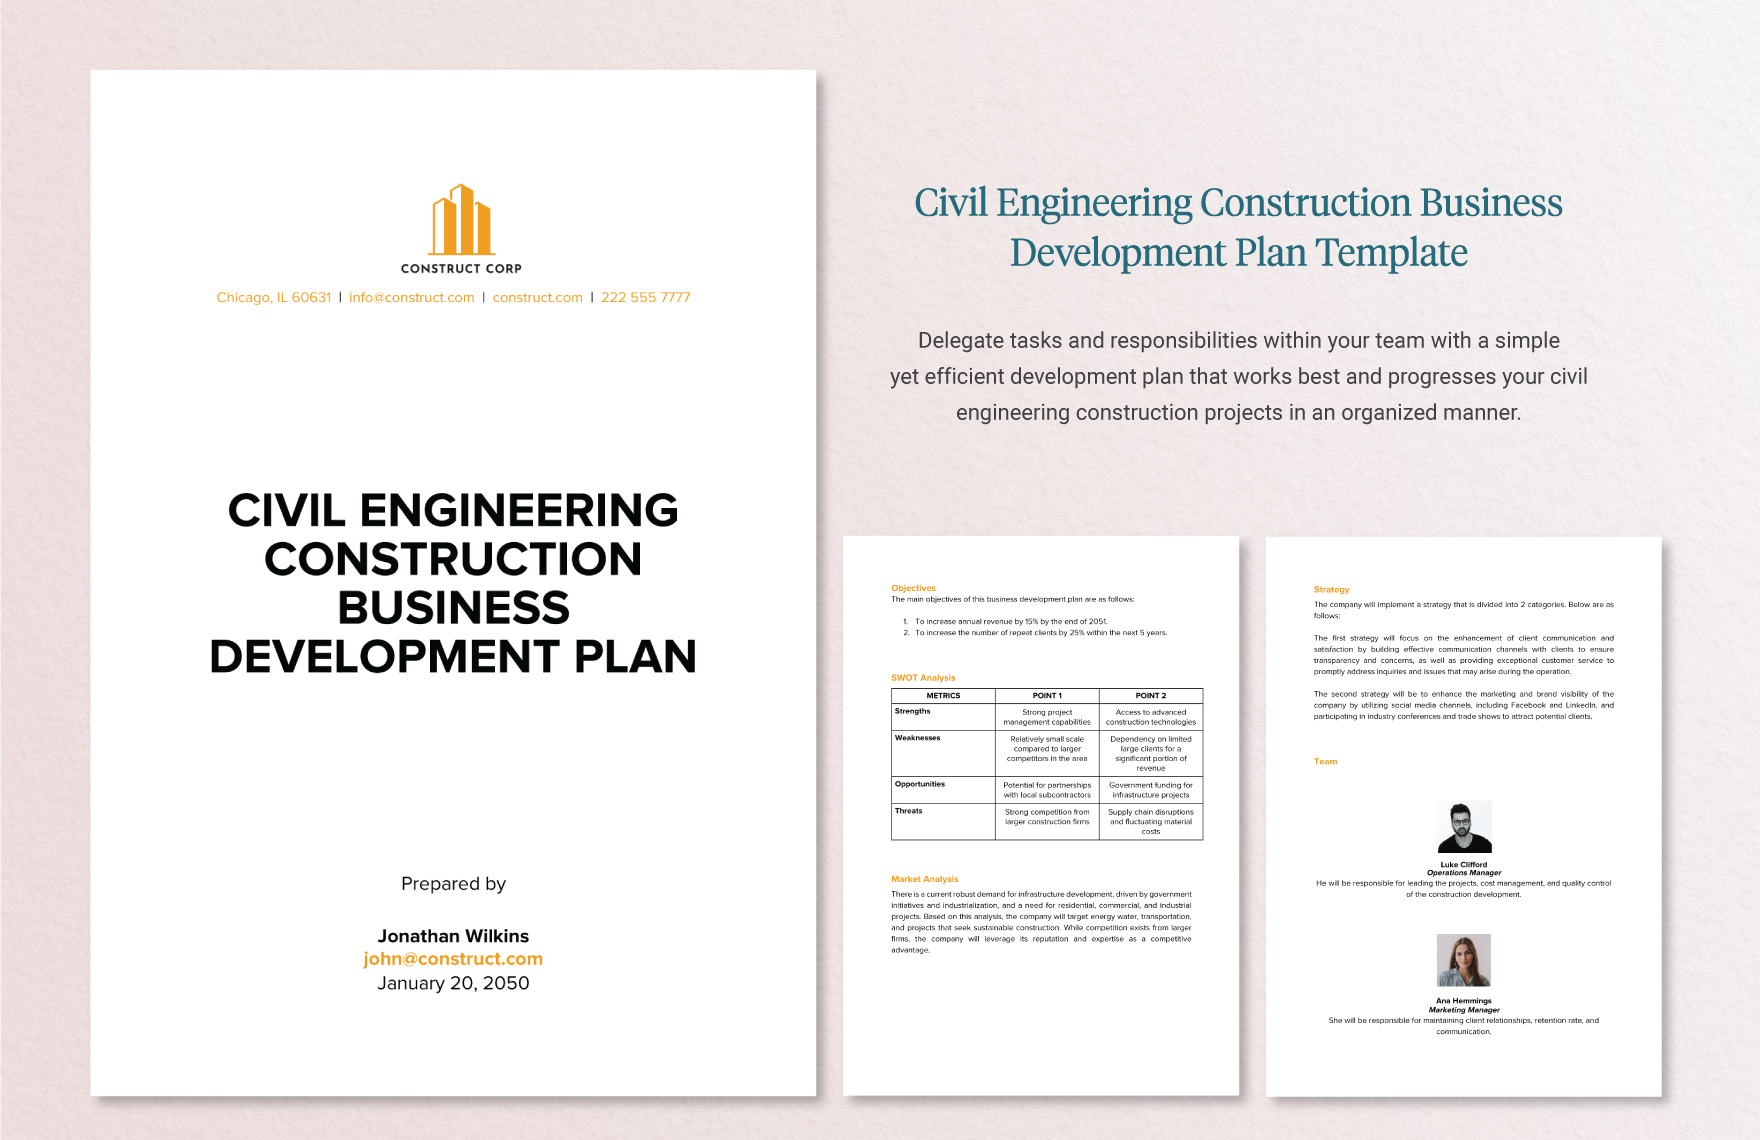 20 Construction Business Development Plan Template Bundle